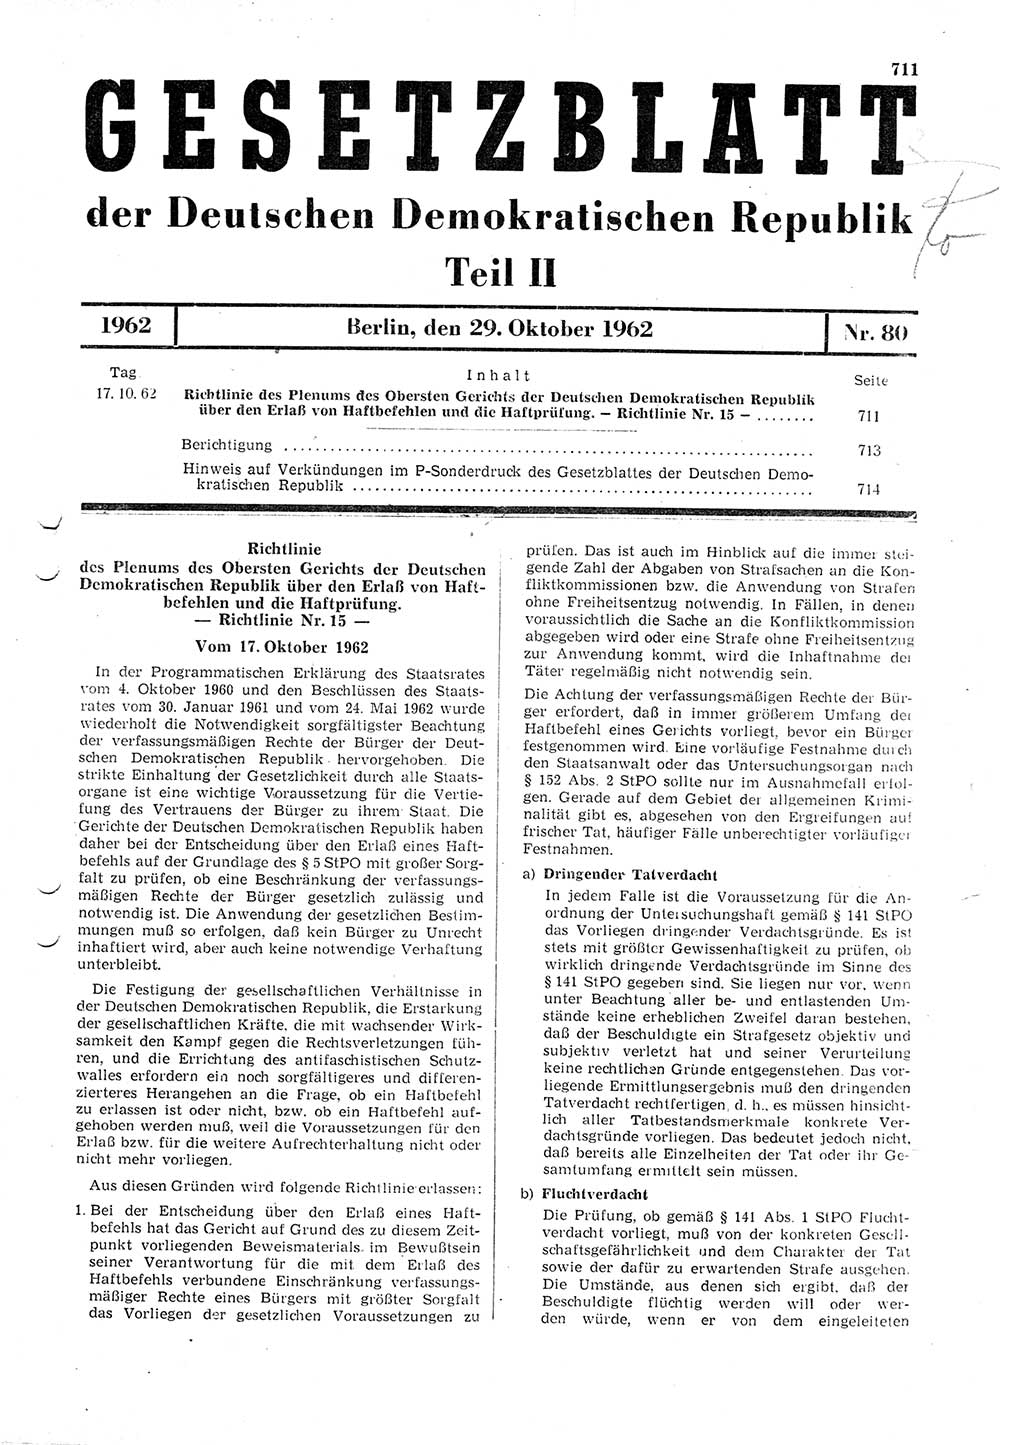 Gesetzblatt (GBl.) der Deutschen Demokratischen Republik (DDR) Teil ⅠⅠ 1962, Seite 711 (GBl. DDR ⅠⅠ 1962, S. 711)